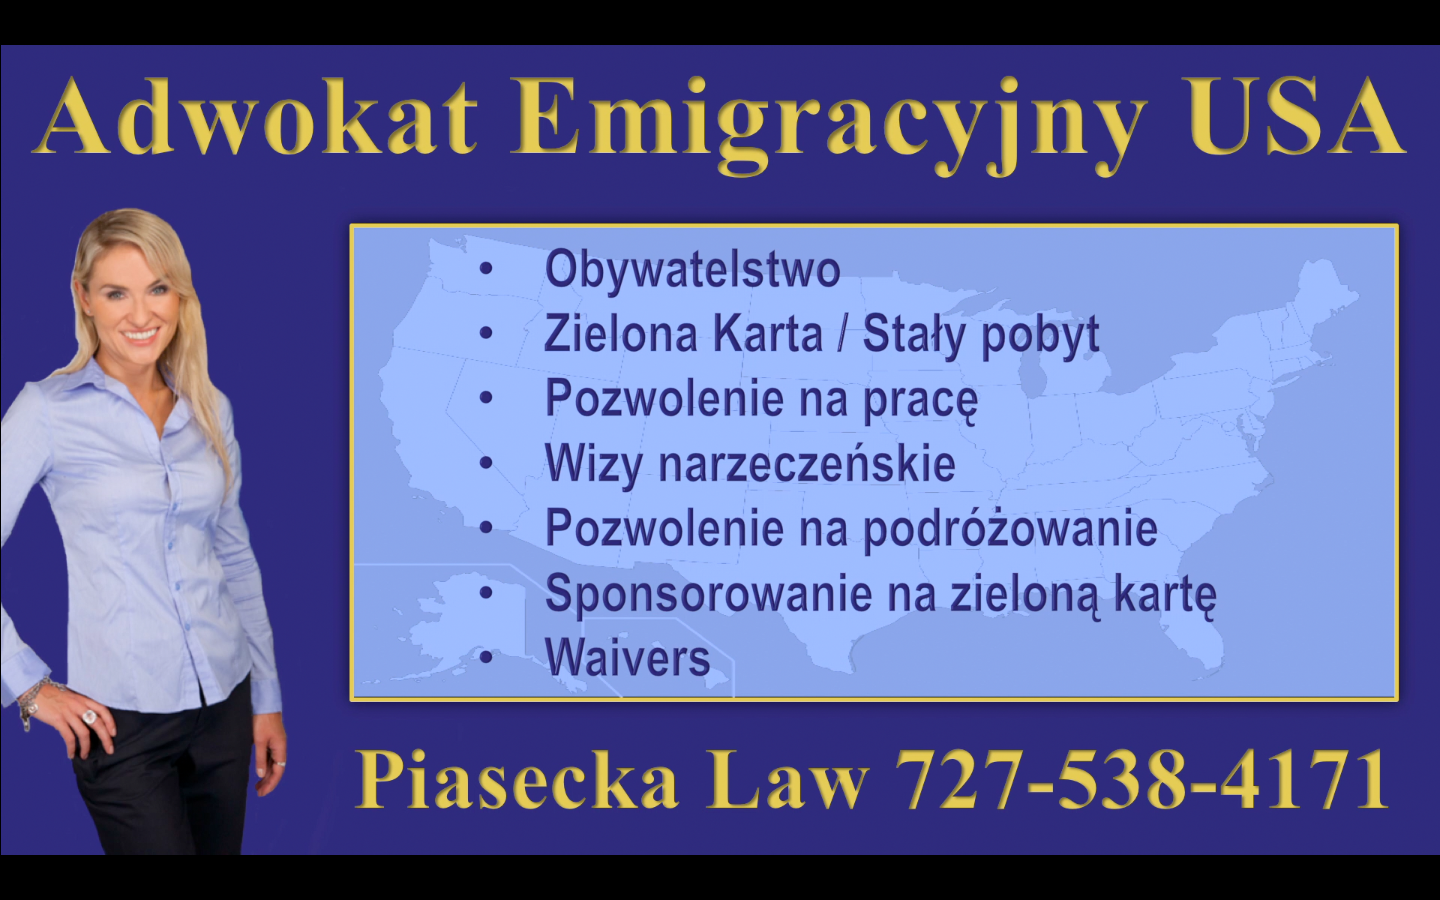 Adwokat Emigracyjny USA Piasecka Law 727-538-4171